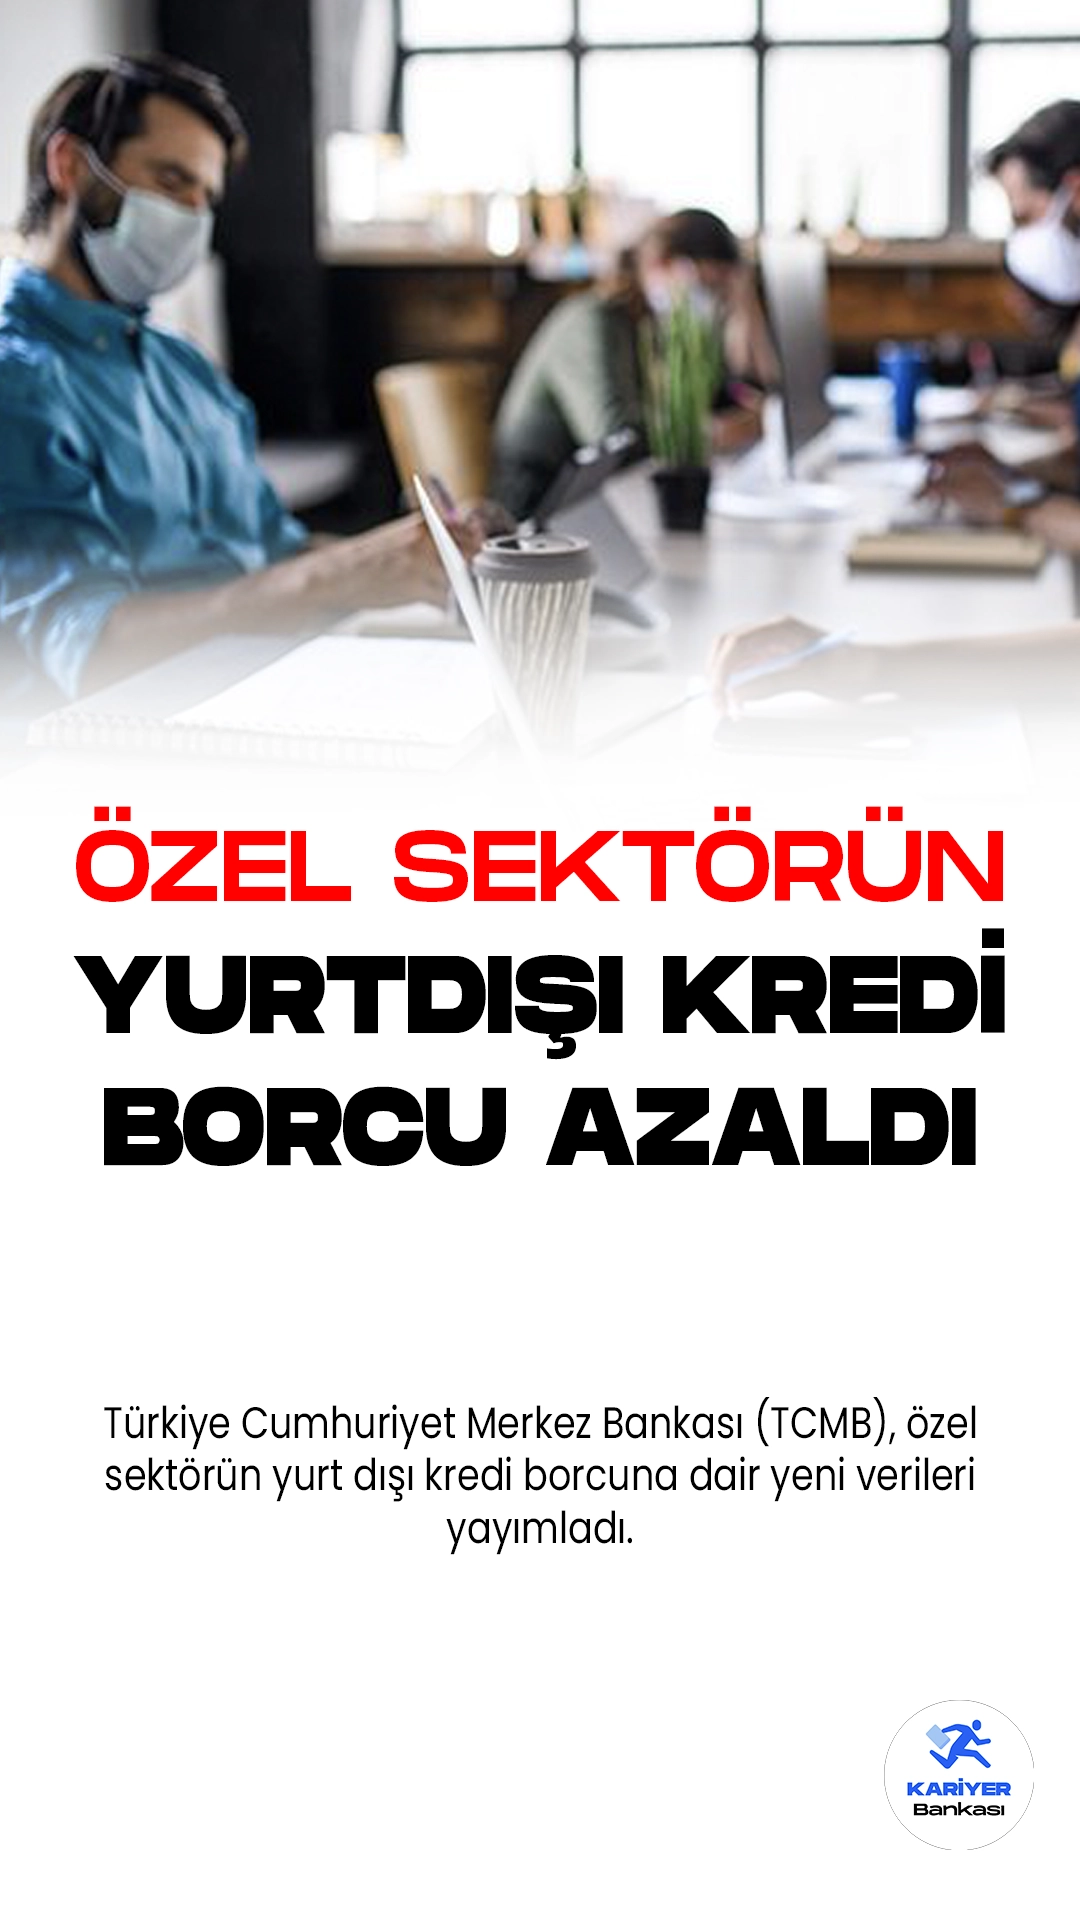 Türkiye Cumhuriyet Merkez Bankası (TCMB), özel sektörün yurt dışı kredi borcuna dair yeni verileri yayımladı. Yayımlanan verilere göre özel sektörün toplam kredi borcu geriledi.